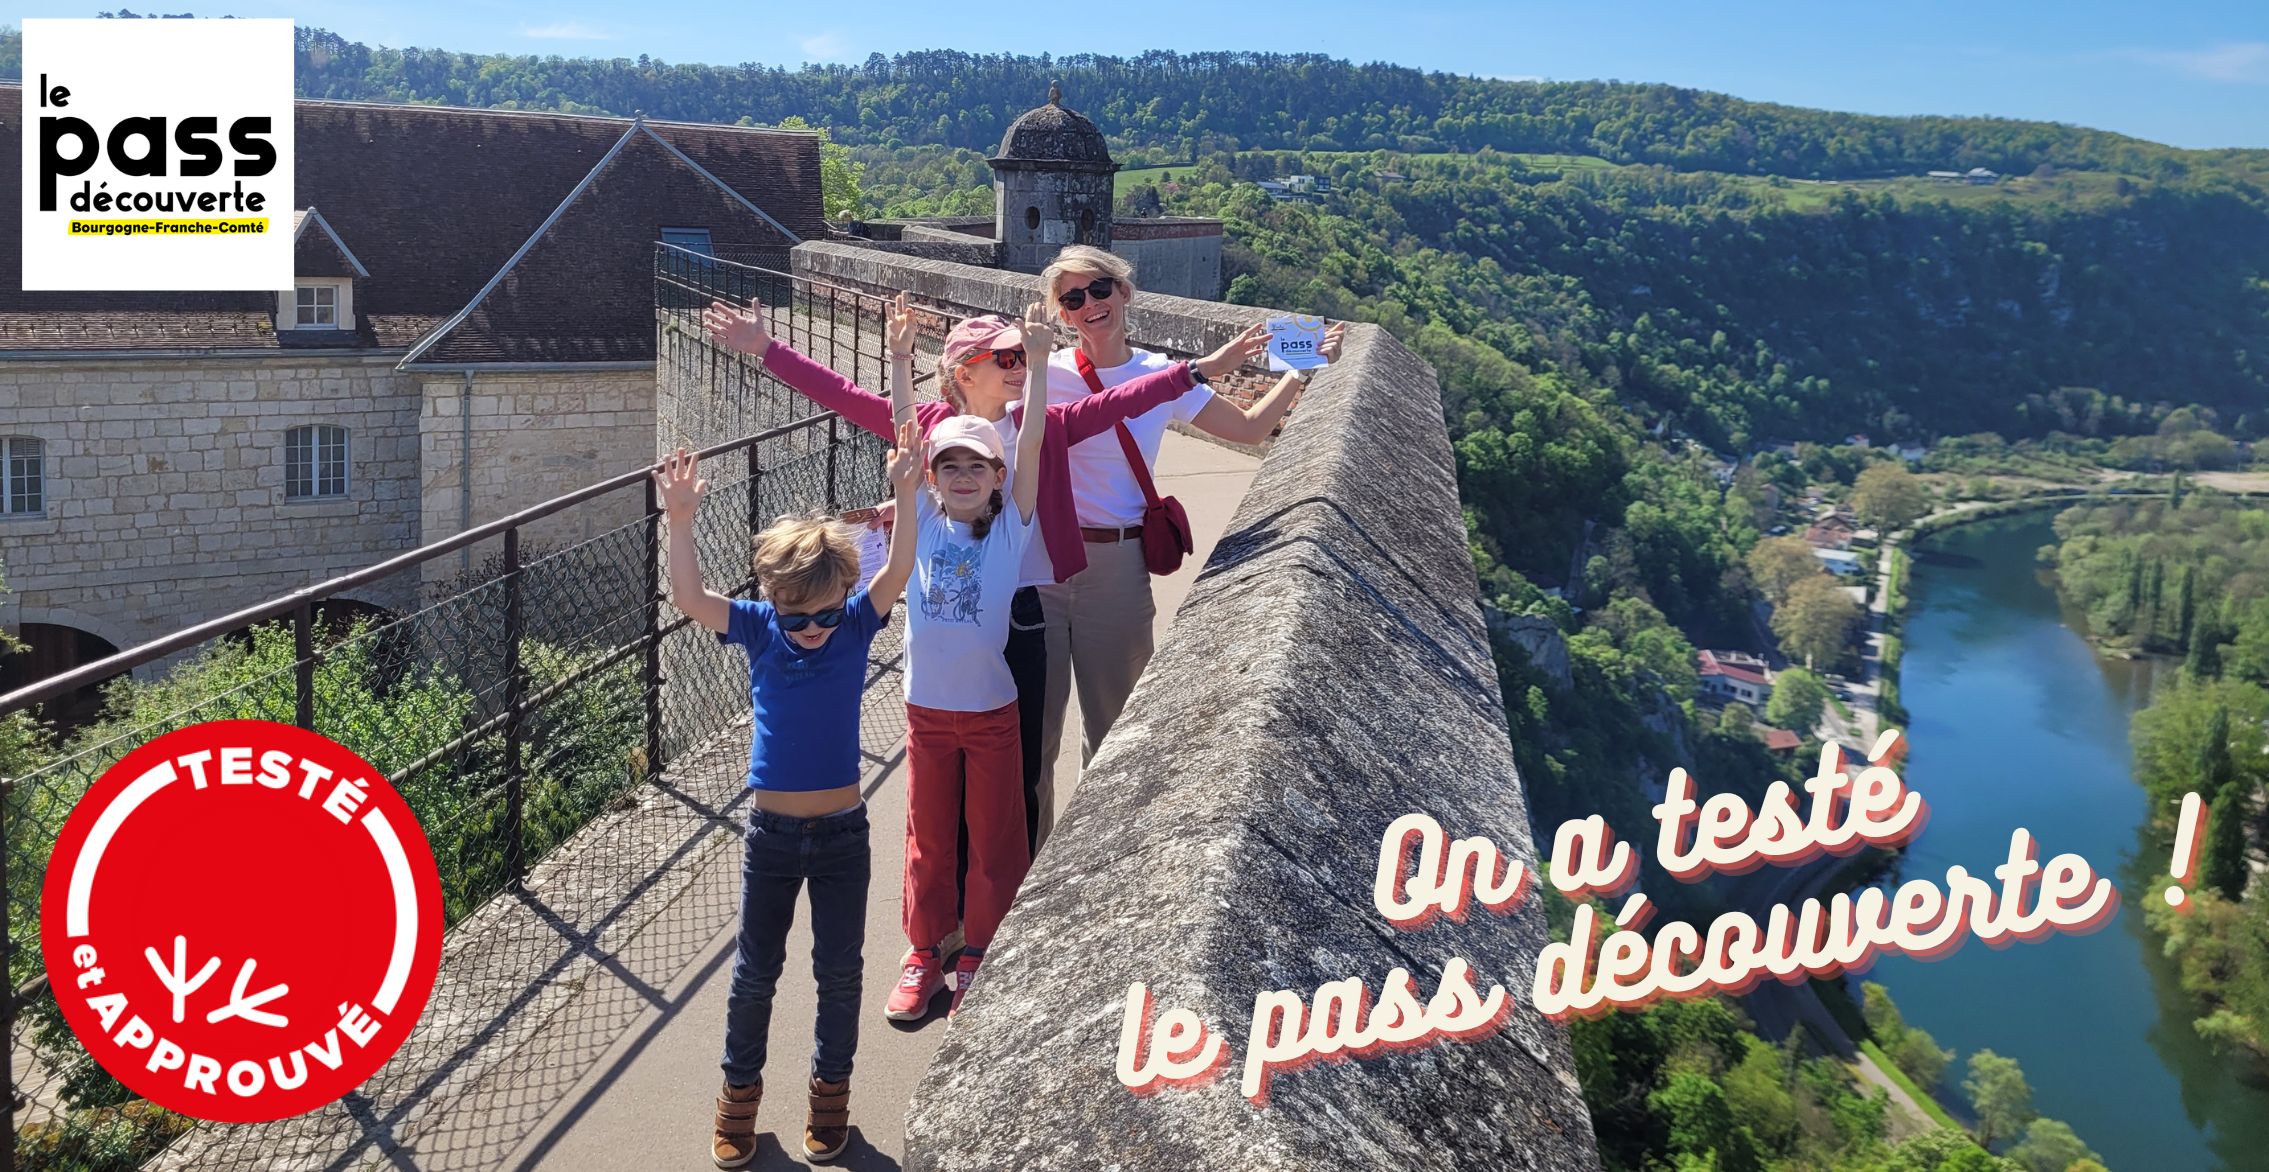 ❤ Kidiklik a testé le PASS DÉCOUVERTE Bourgogne-Franche-Comté: un bon plan pour sortir en famille en dépensant moins!